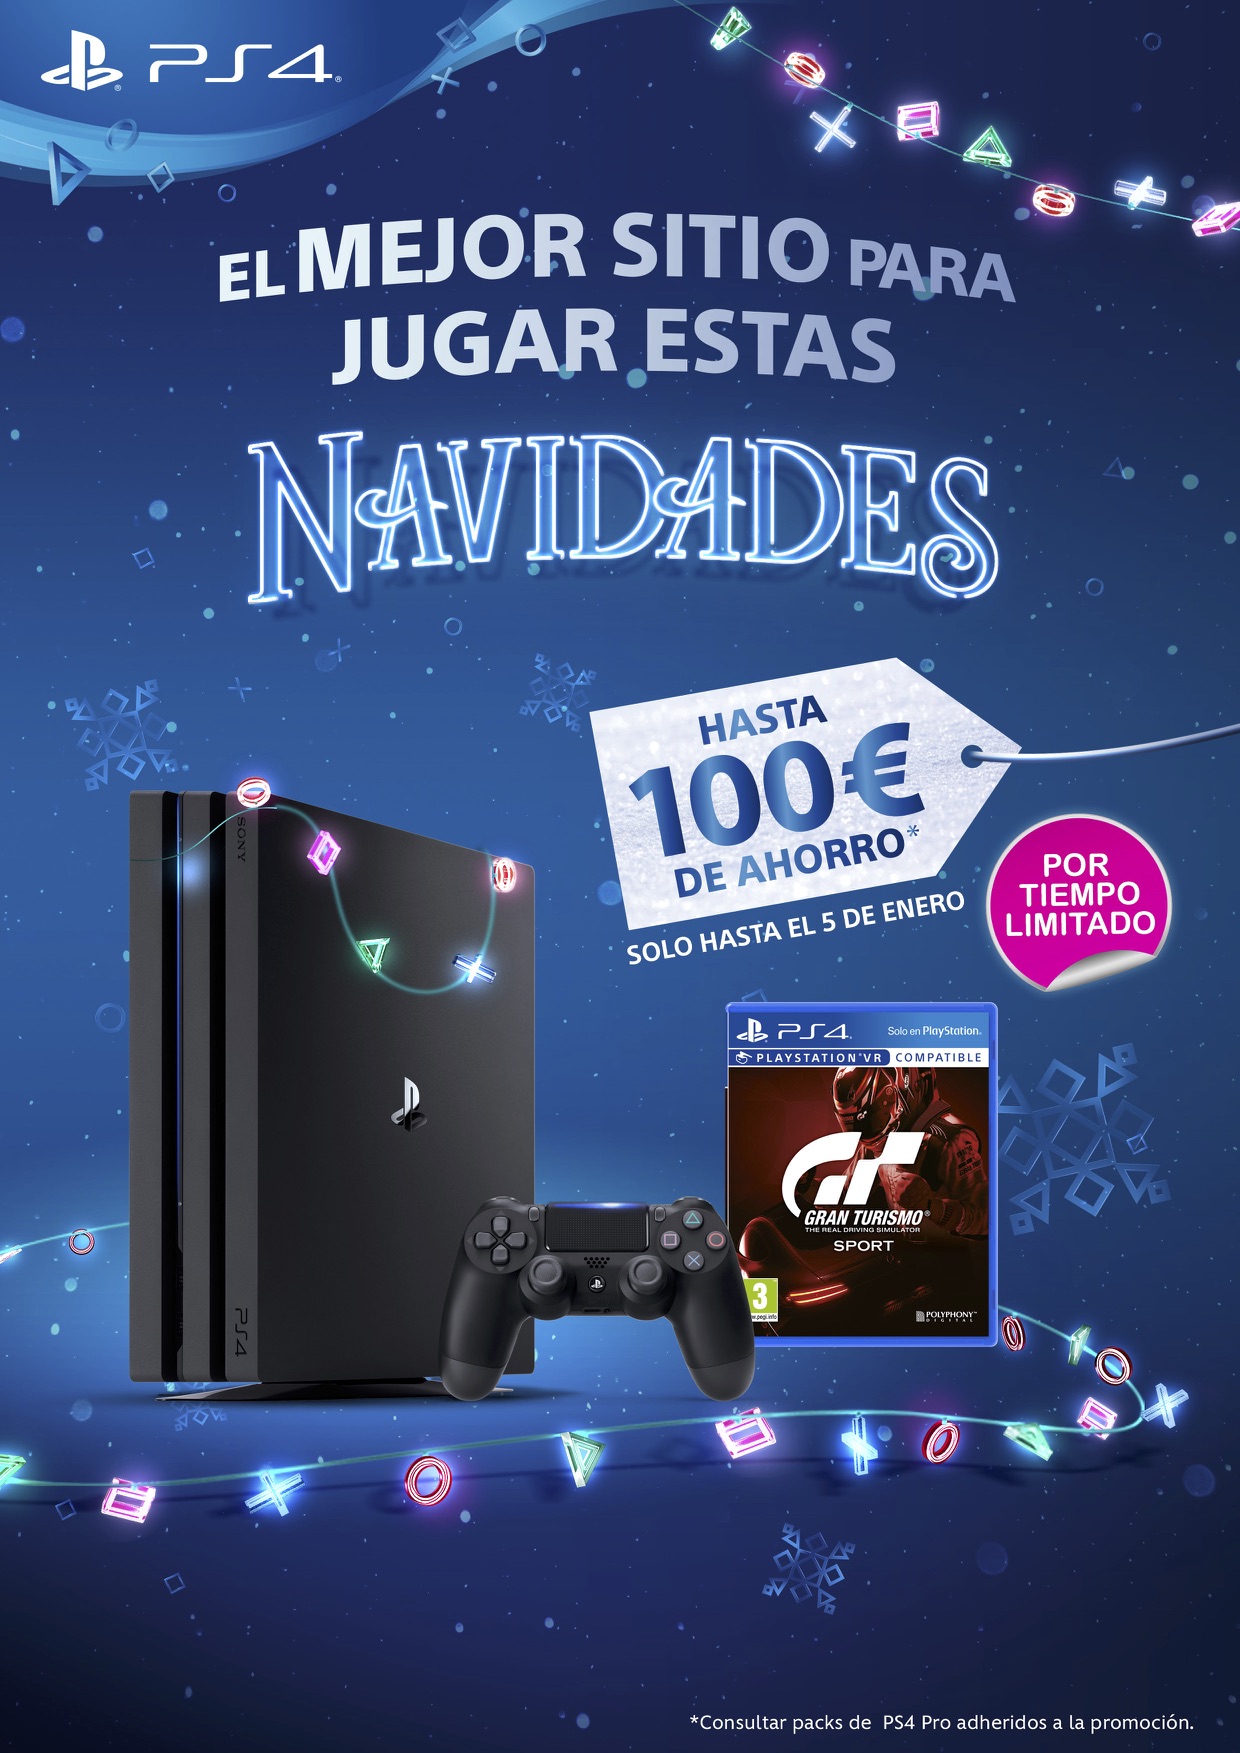 PlayStation celebra la Navidad por todo lo alto con grandes descuentos –  PlayStation.Blog en español